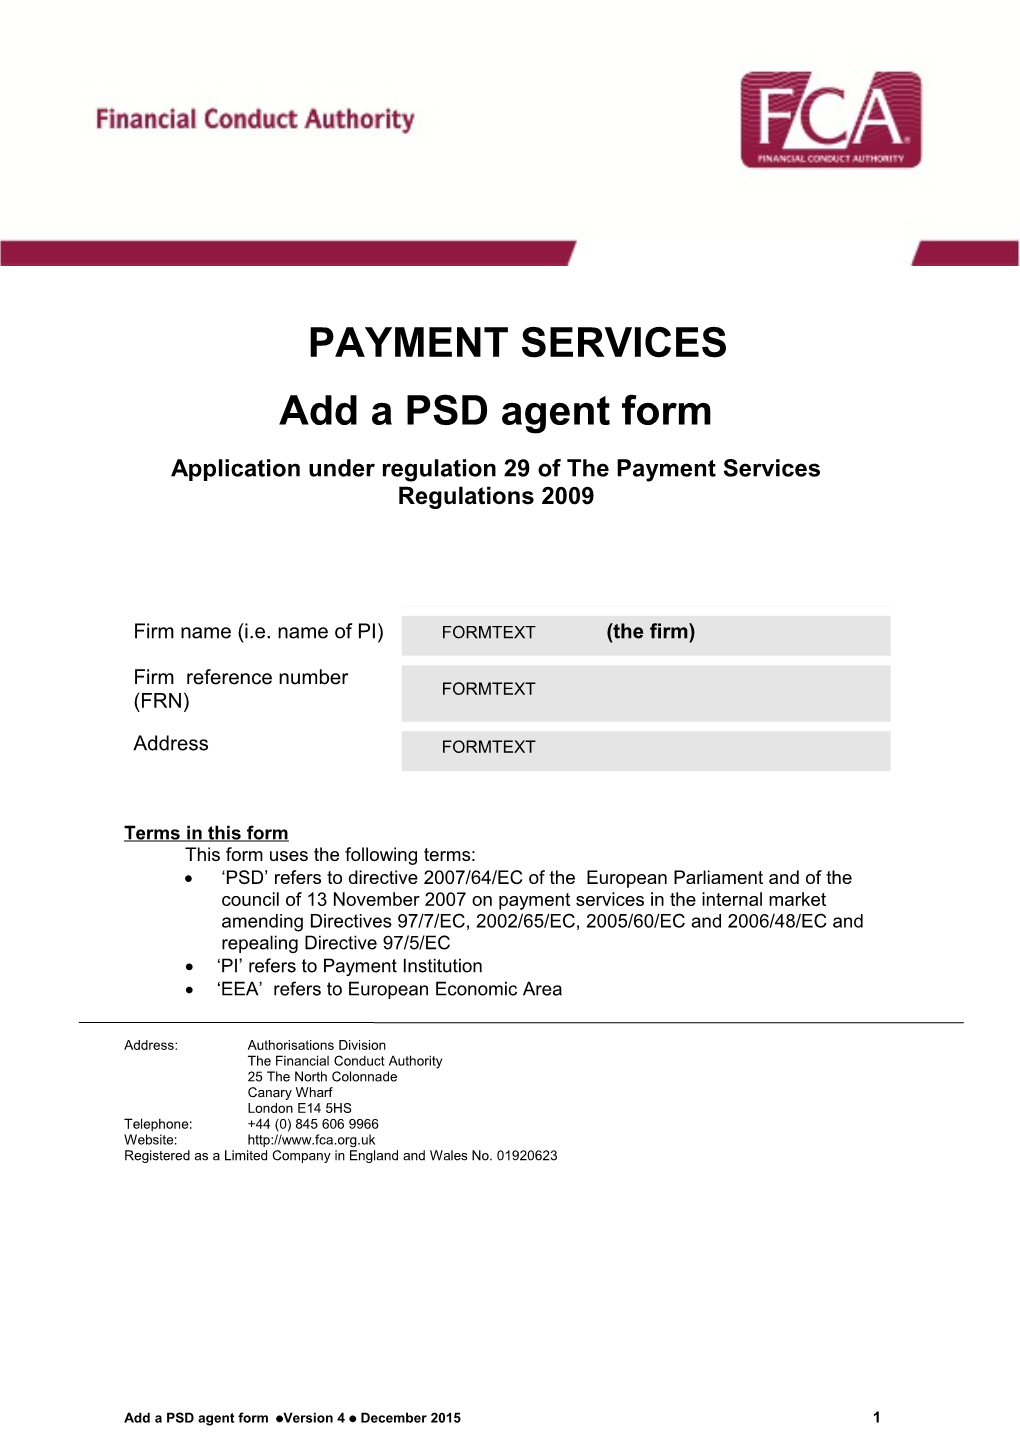 PSD Agent Form